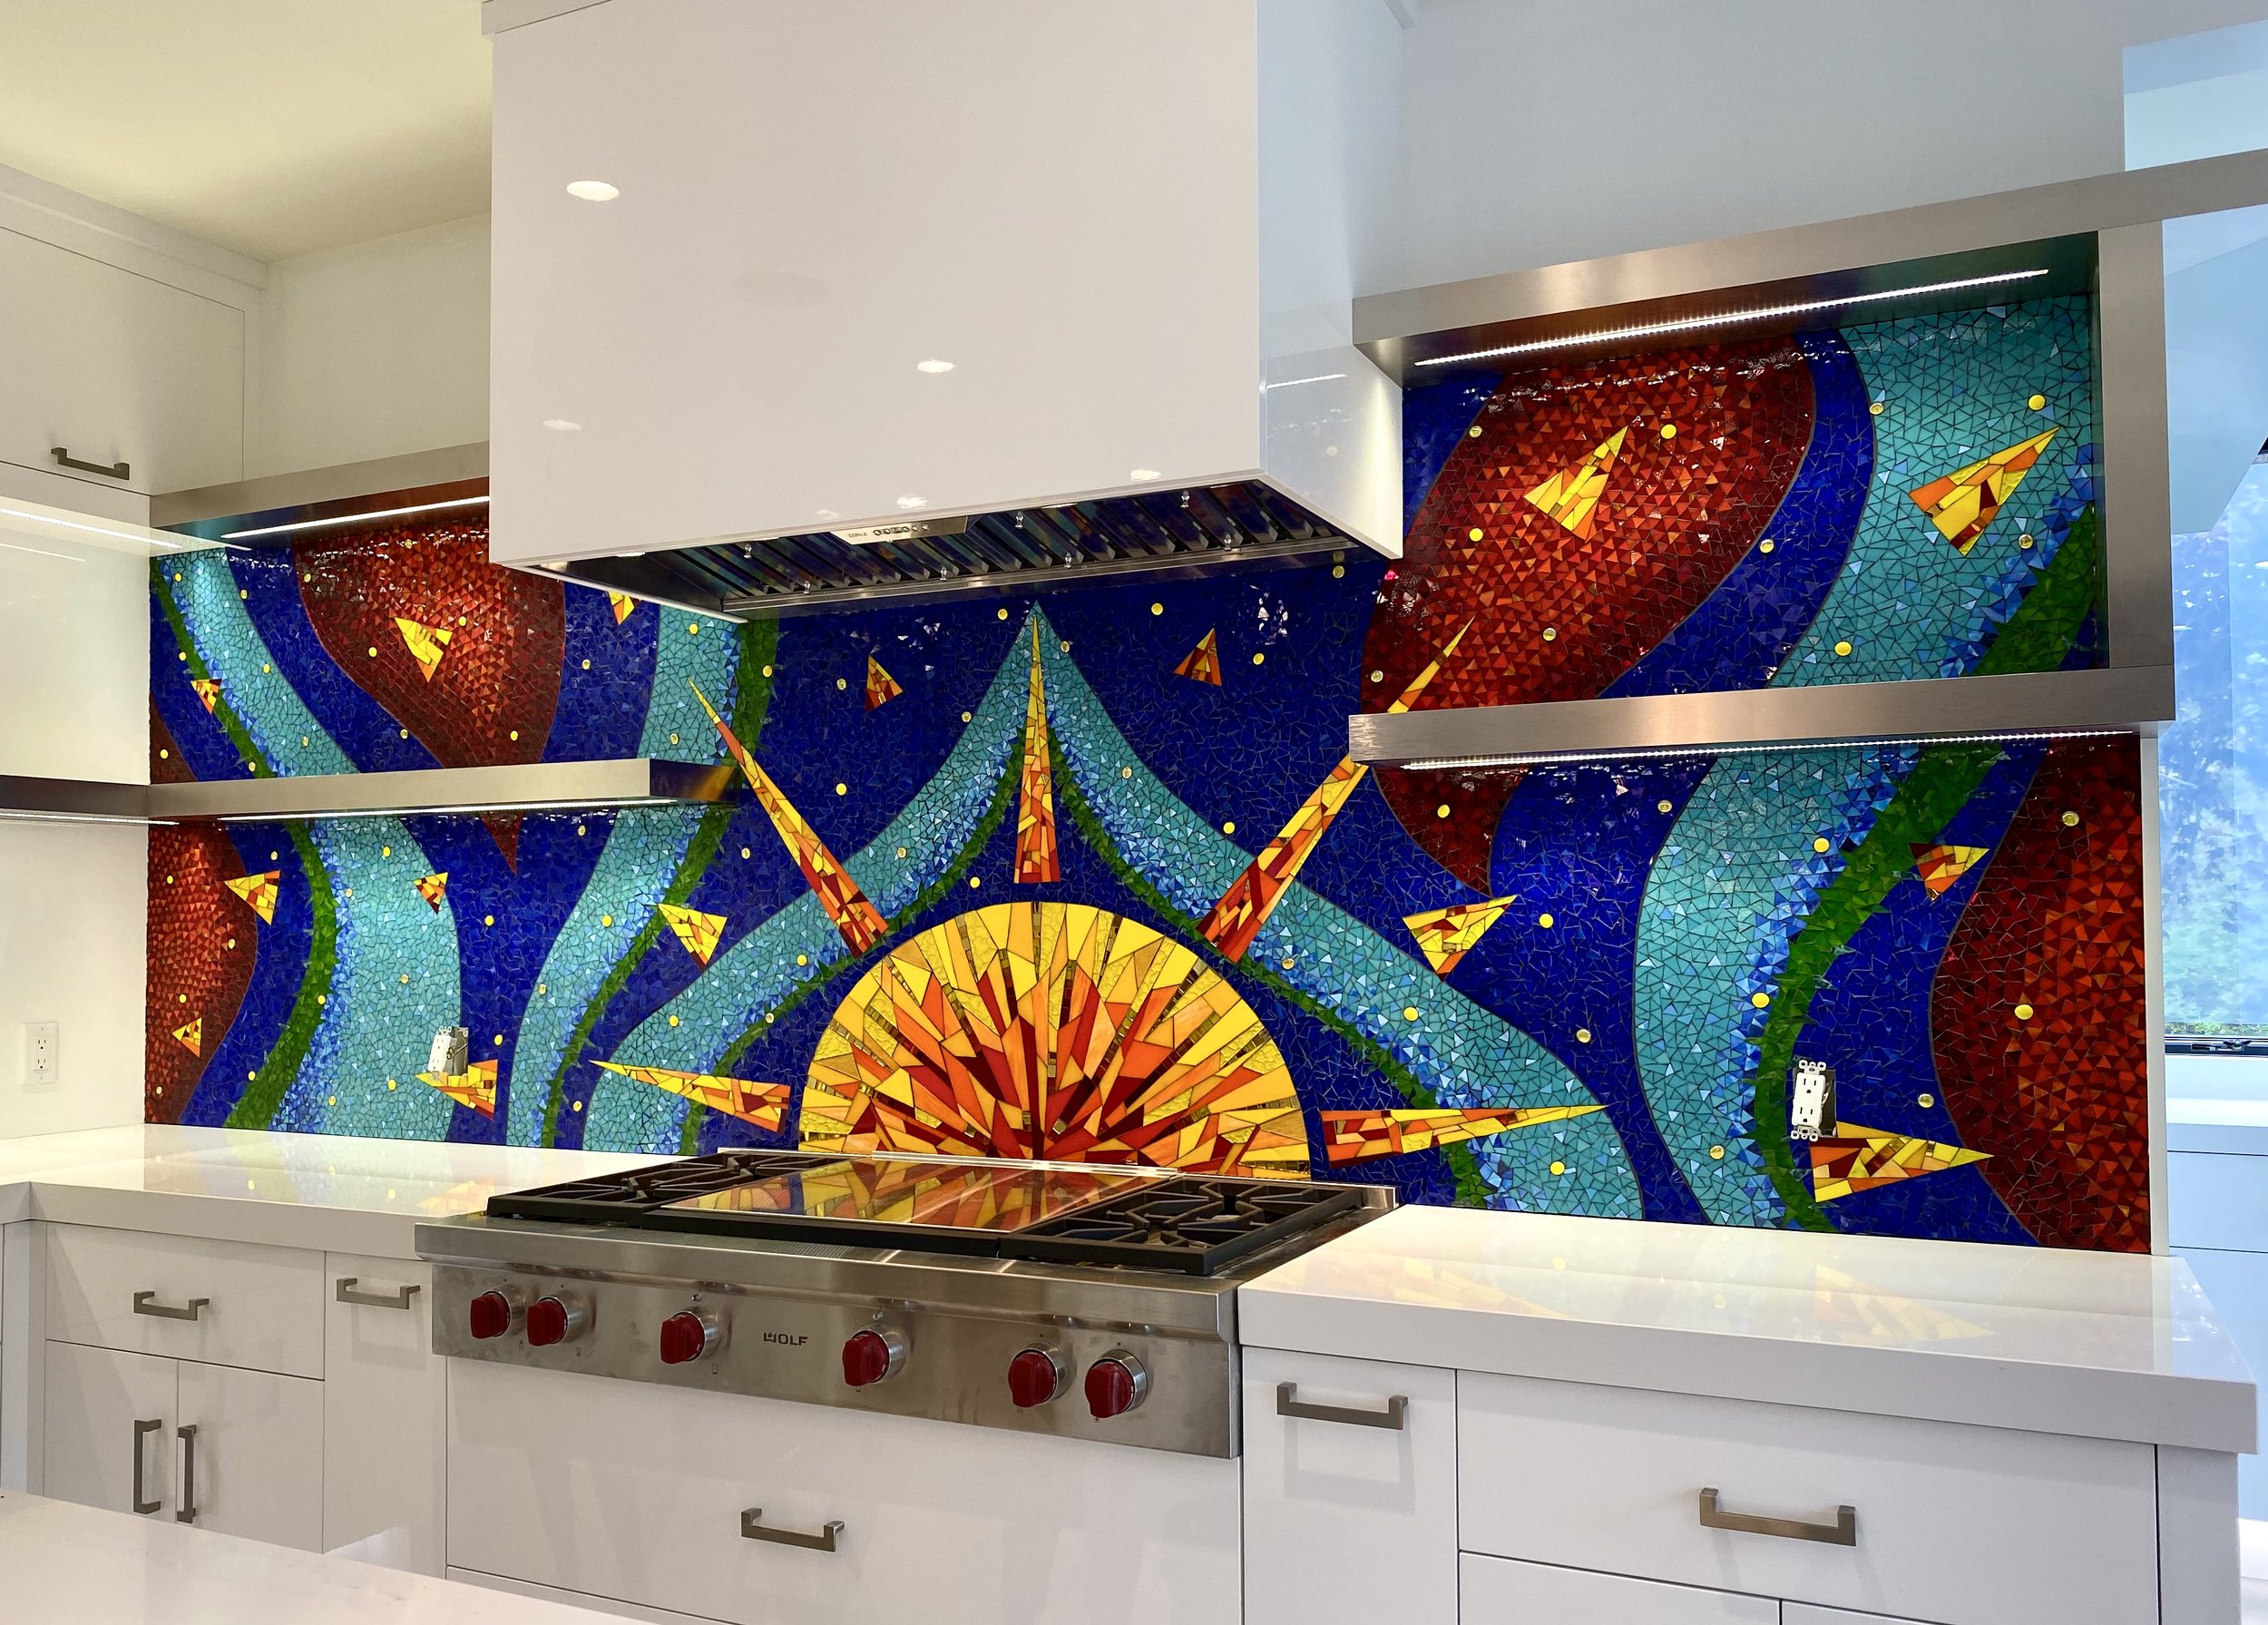 Sun Kitchen Mosaic Backsplash